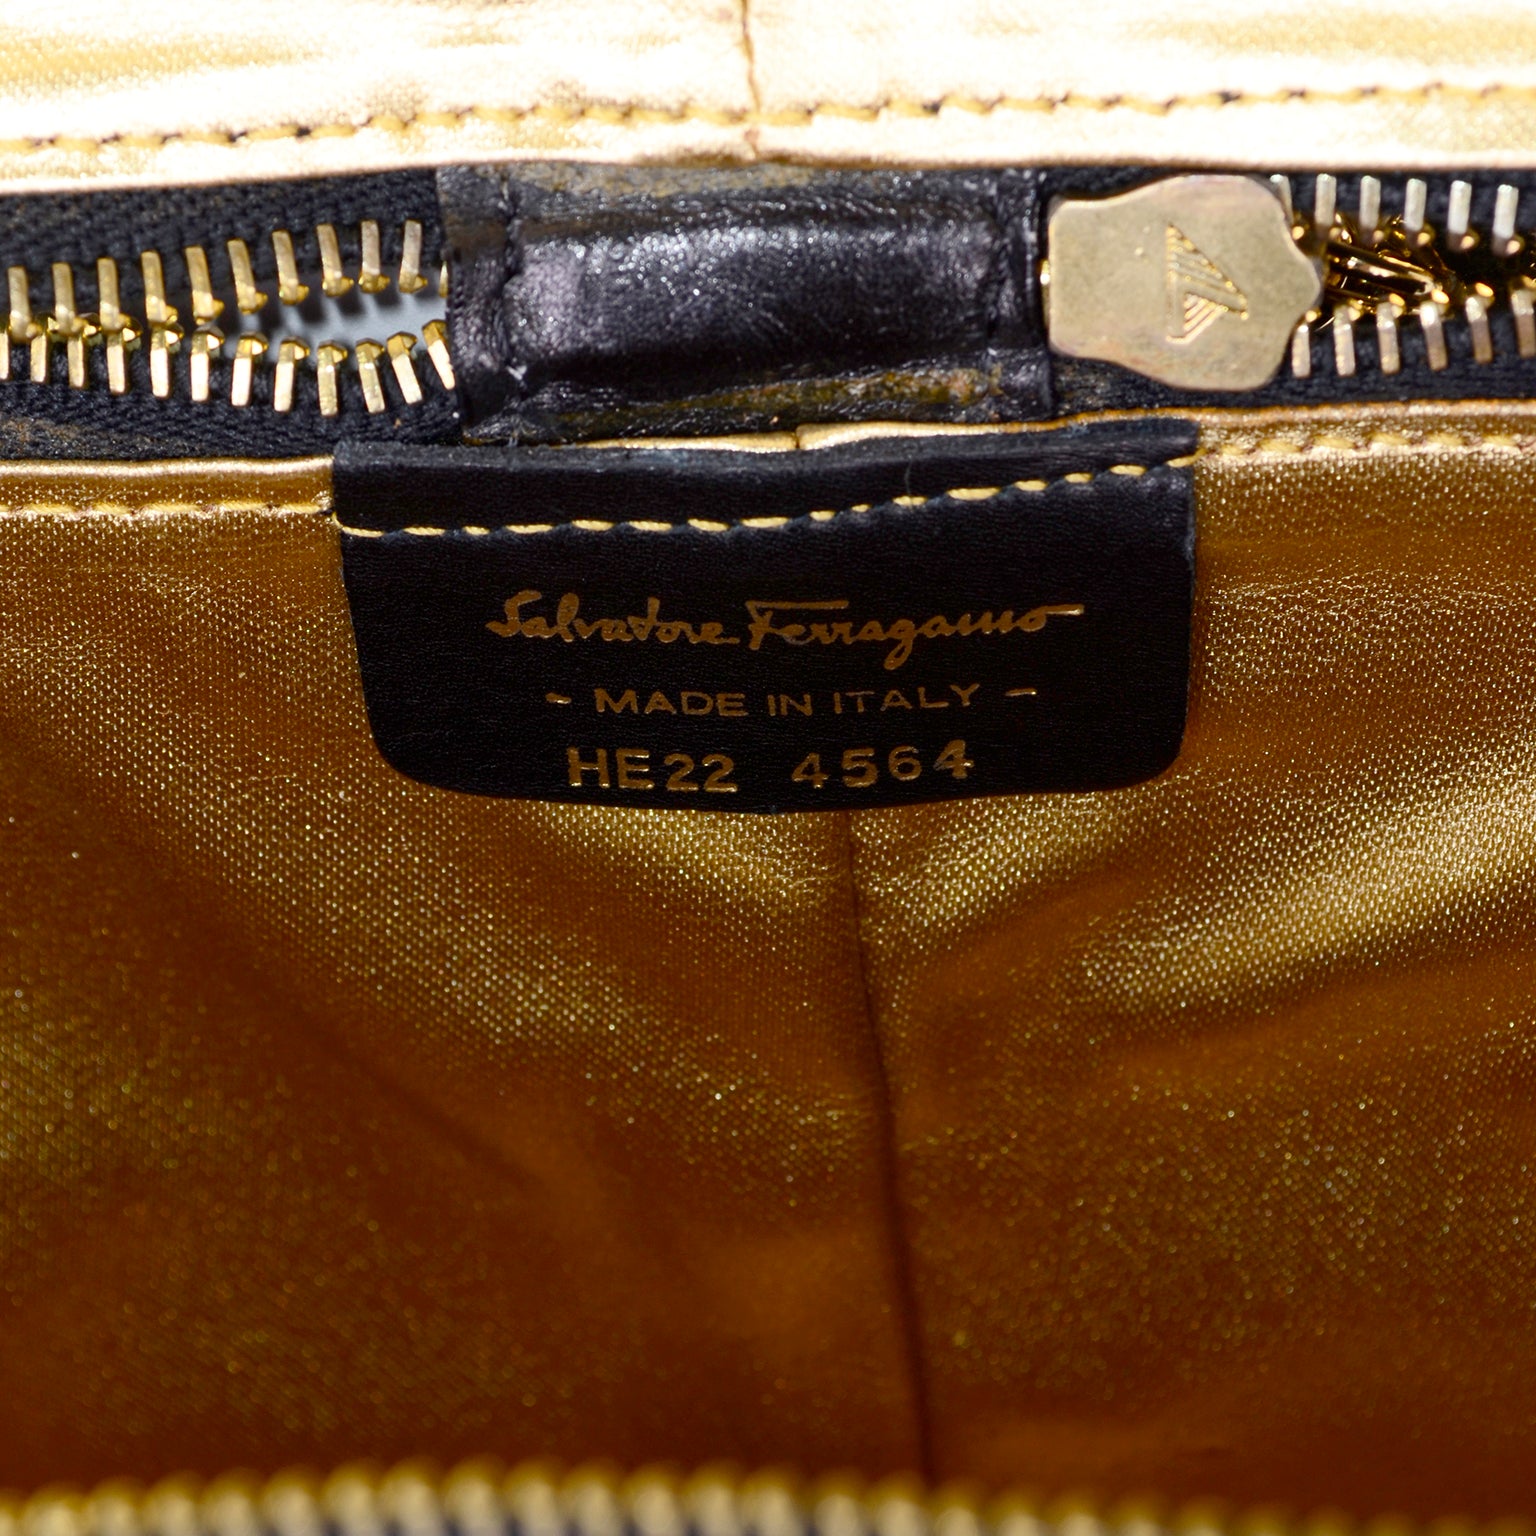 1990s Salvatore Ferragamo Vintage Black Shoe Carrier Bag w/ Original Tags